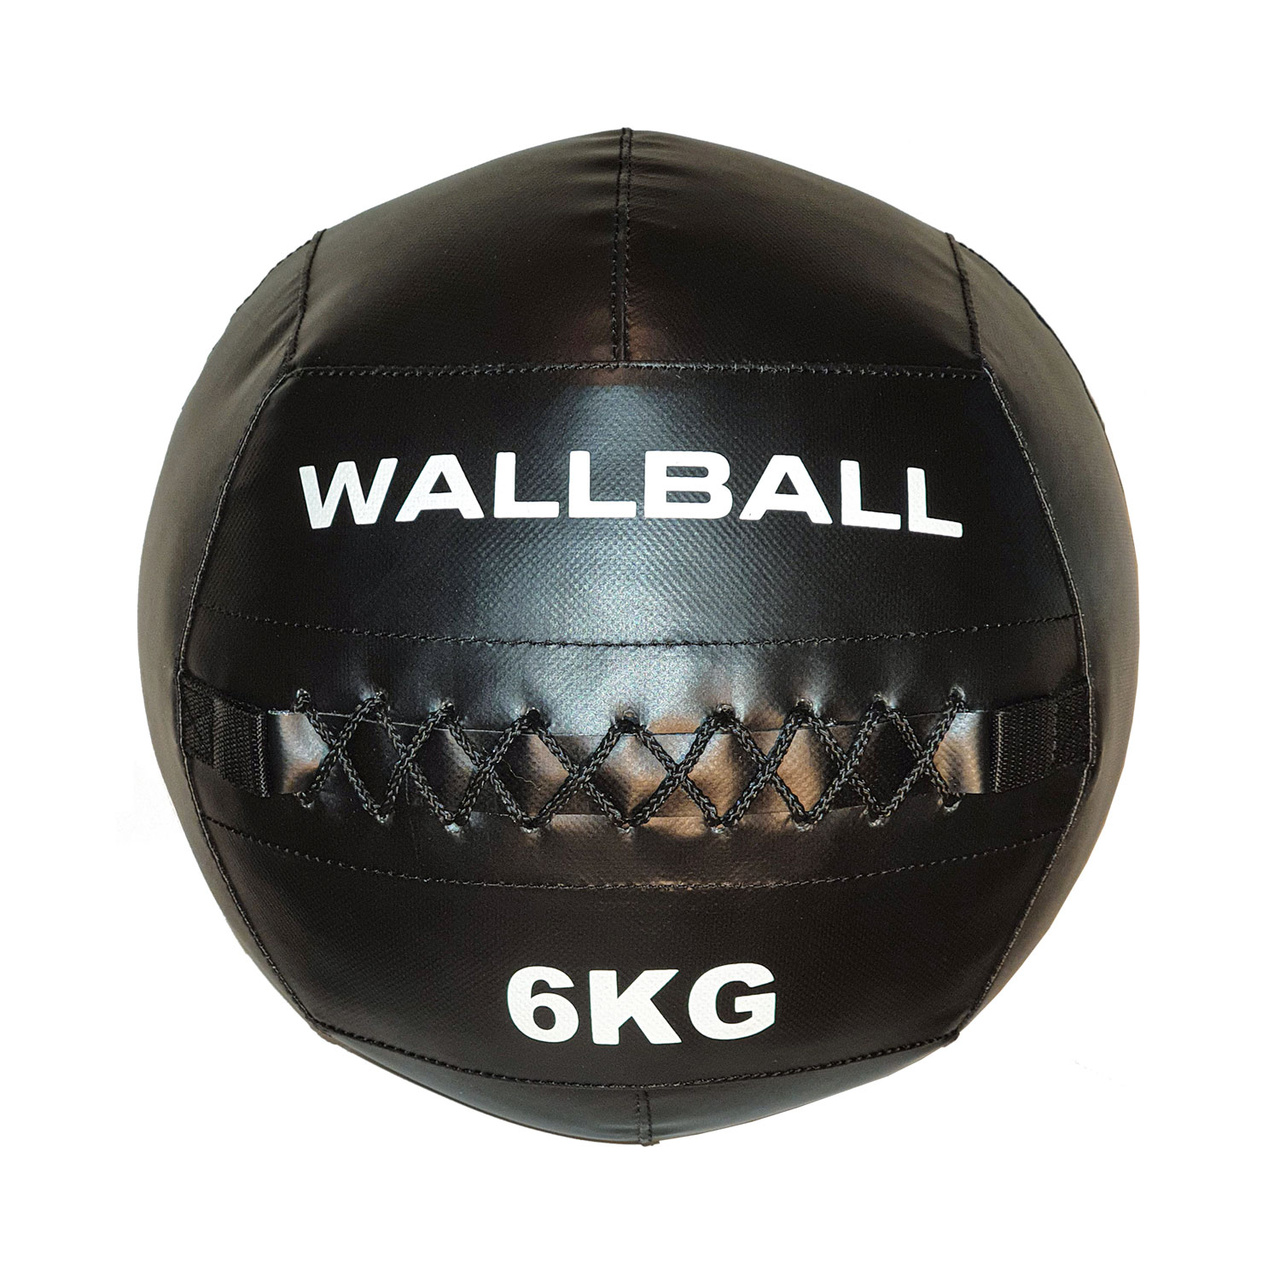 Wallball 6 kg